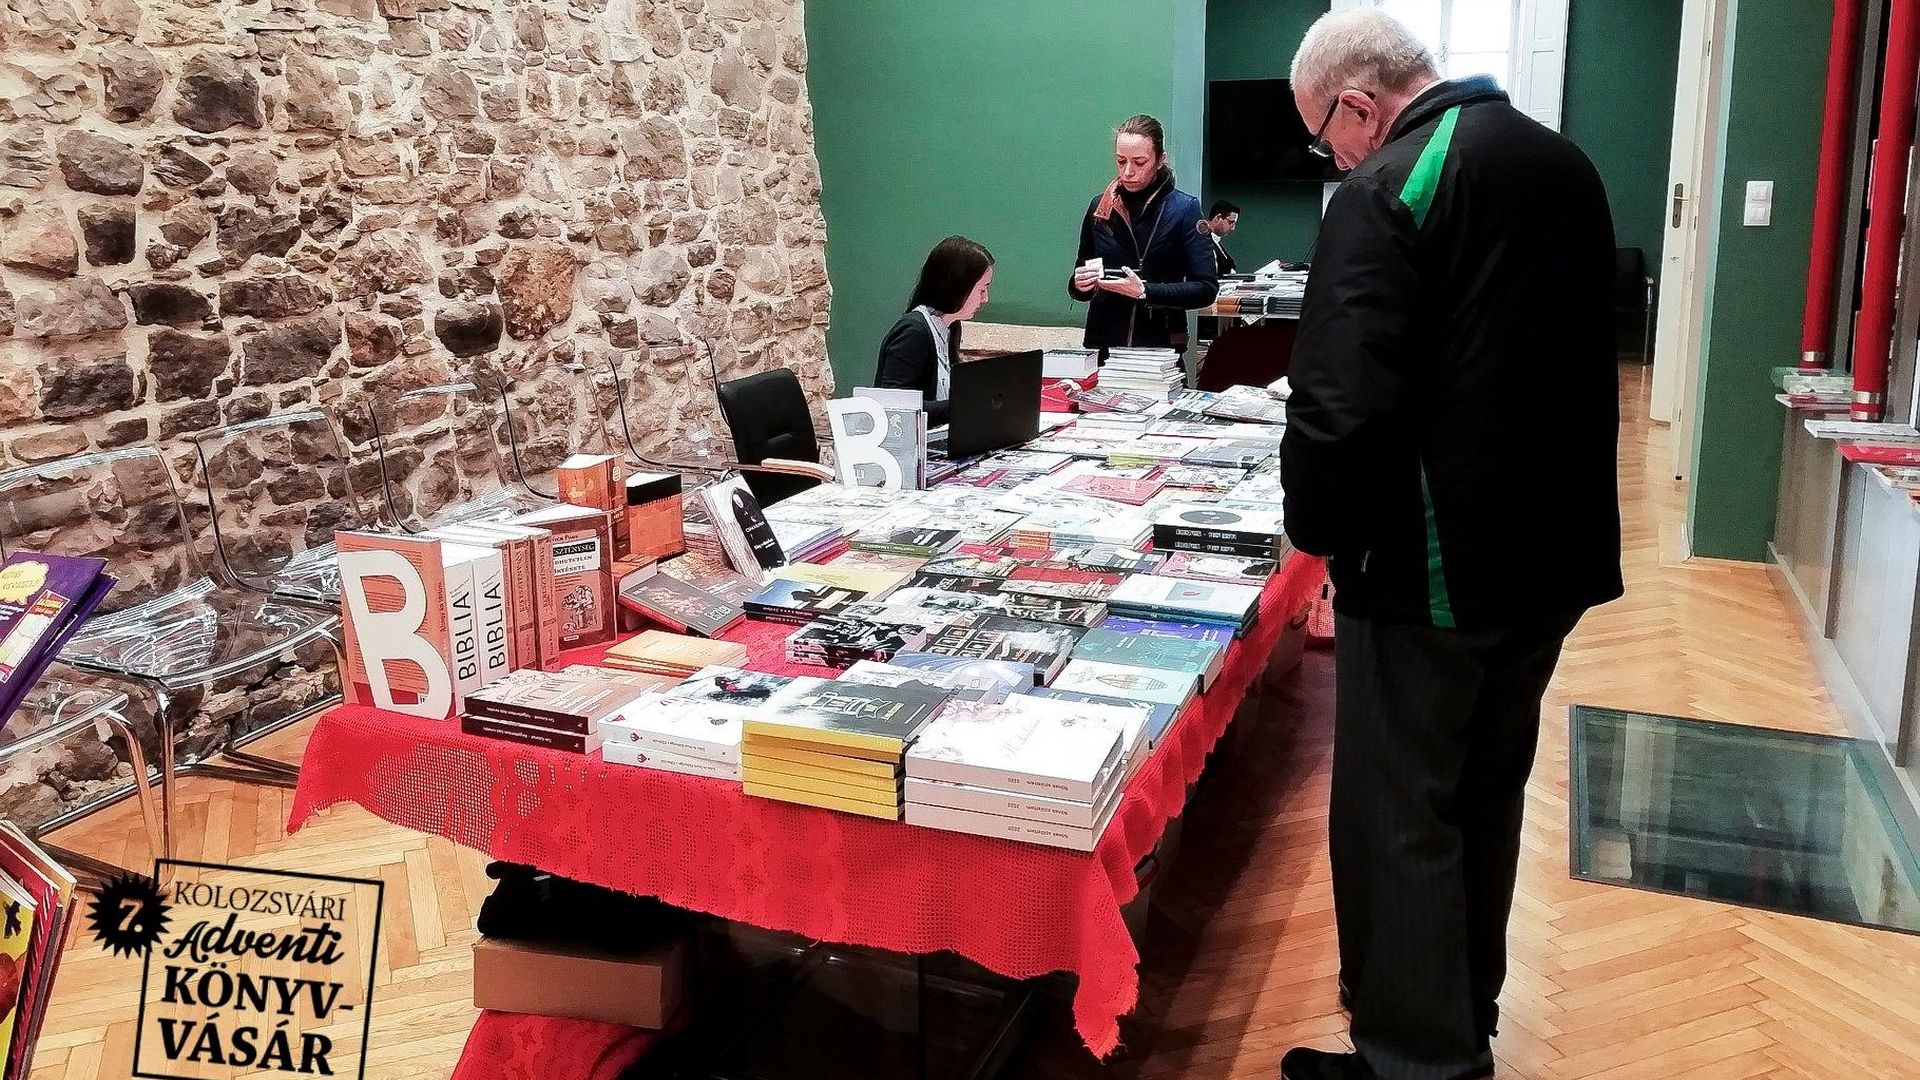 Tulipánlázadástól HázsongArtig: két év szünet után újra Adventi Könyvvásár